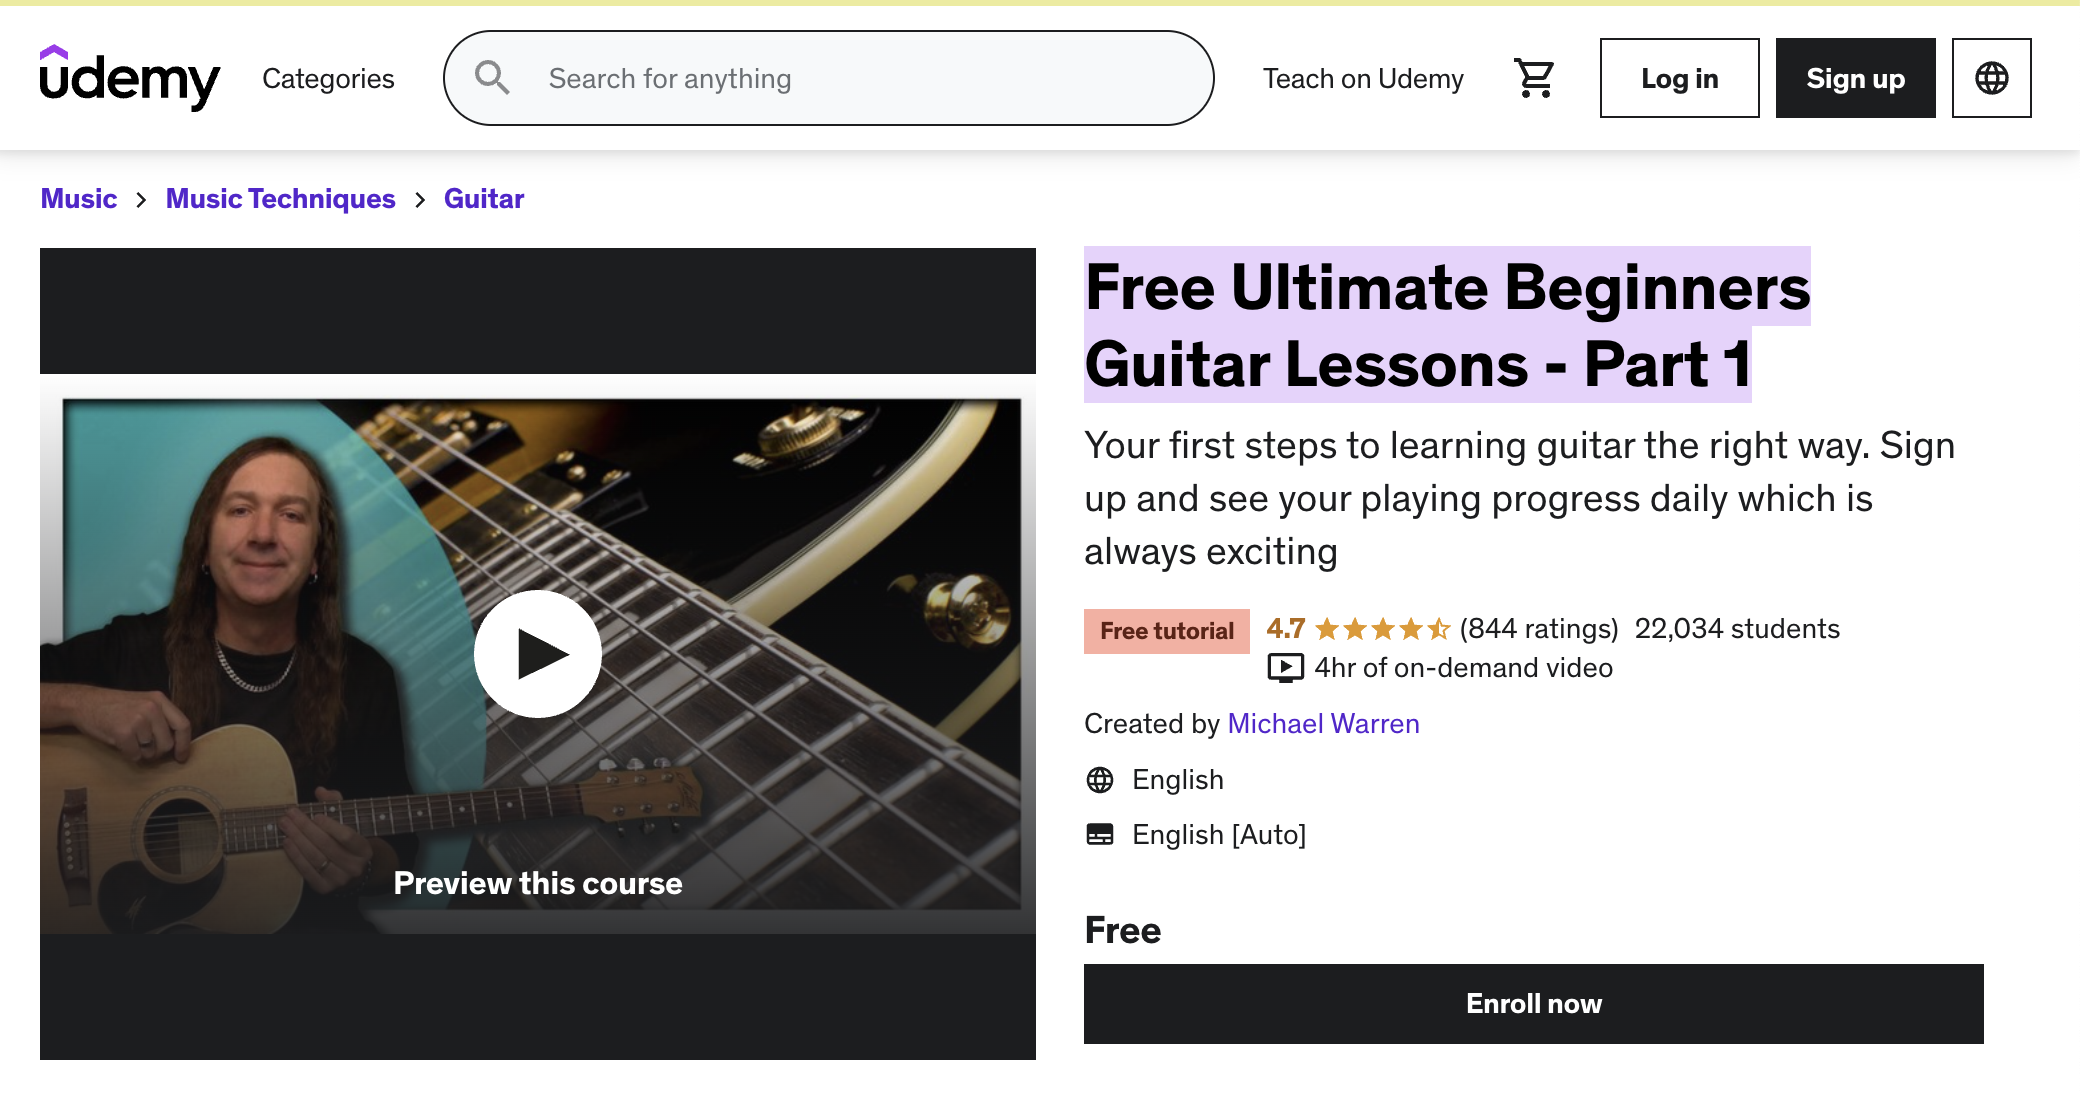 Free Ultimate Beginners Guitar